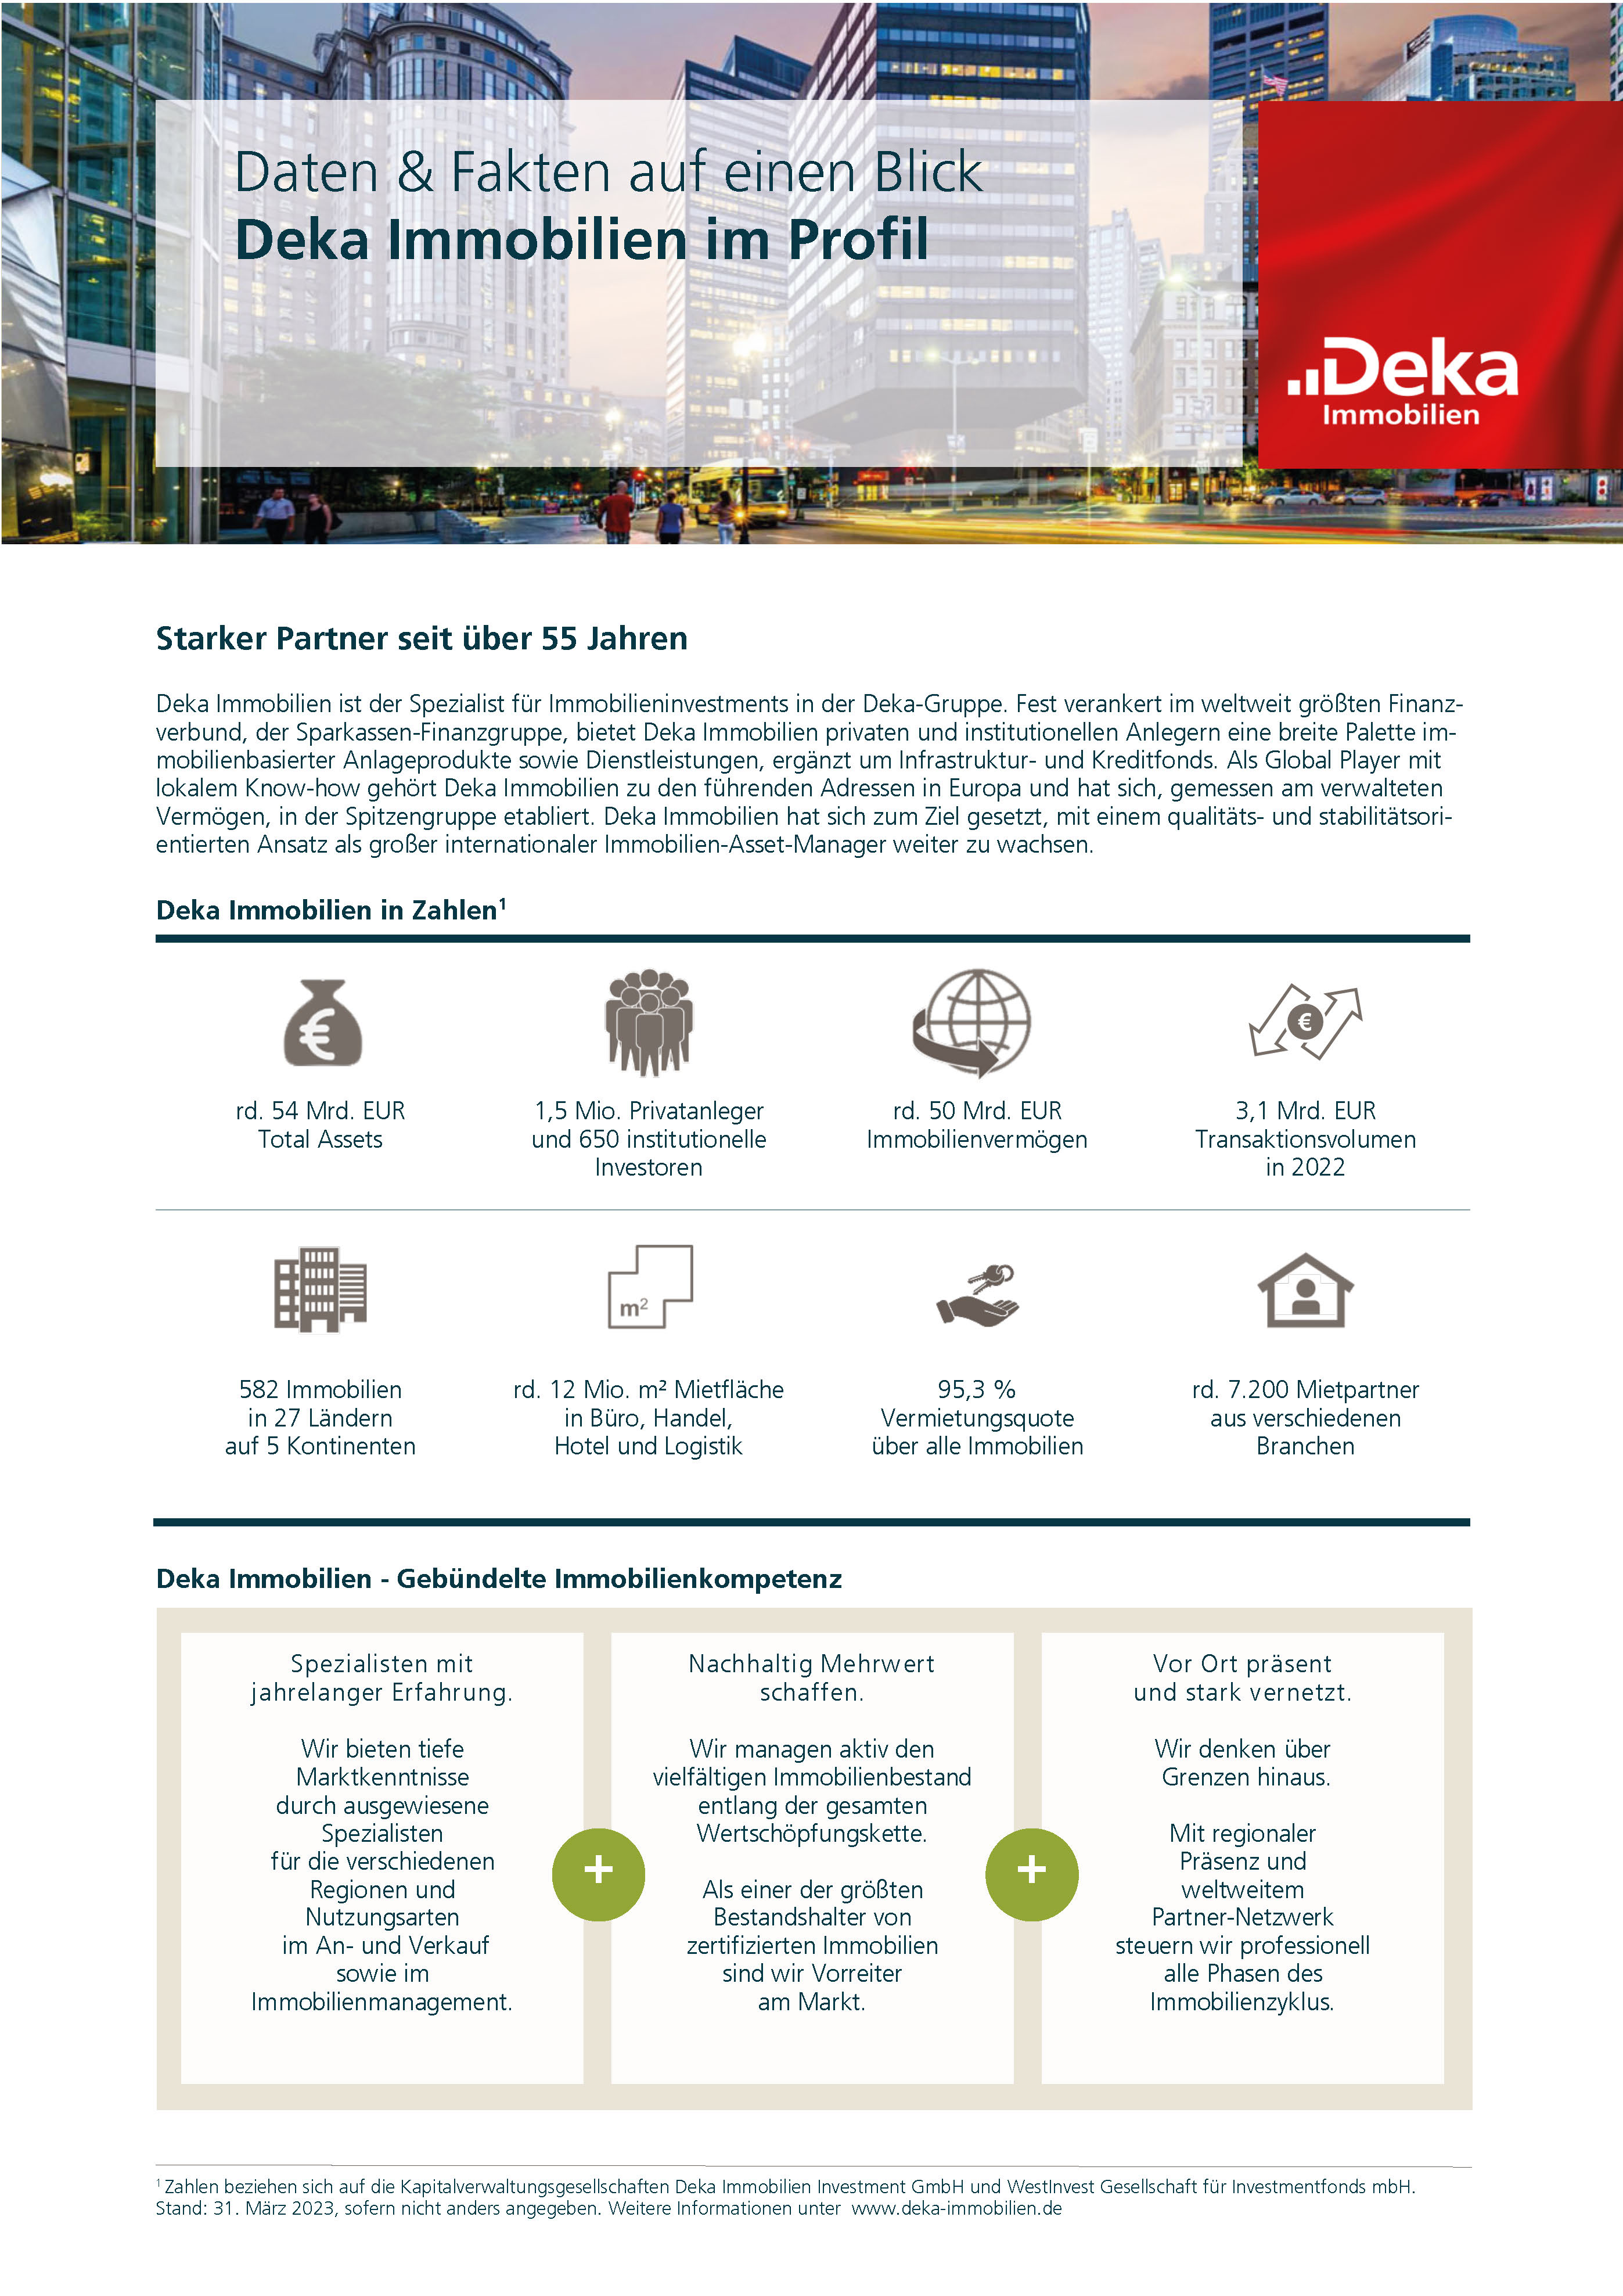 Deka-Immobilien-Profil-300x.jpg